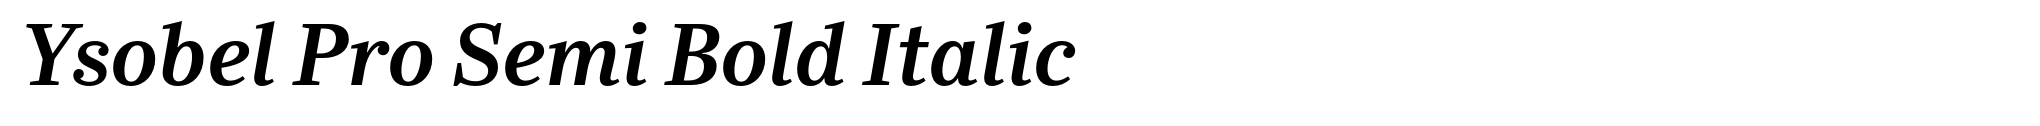 Ysobel Pro Semi Bold Italic image